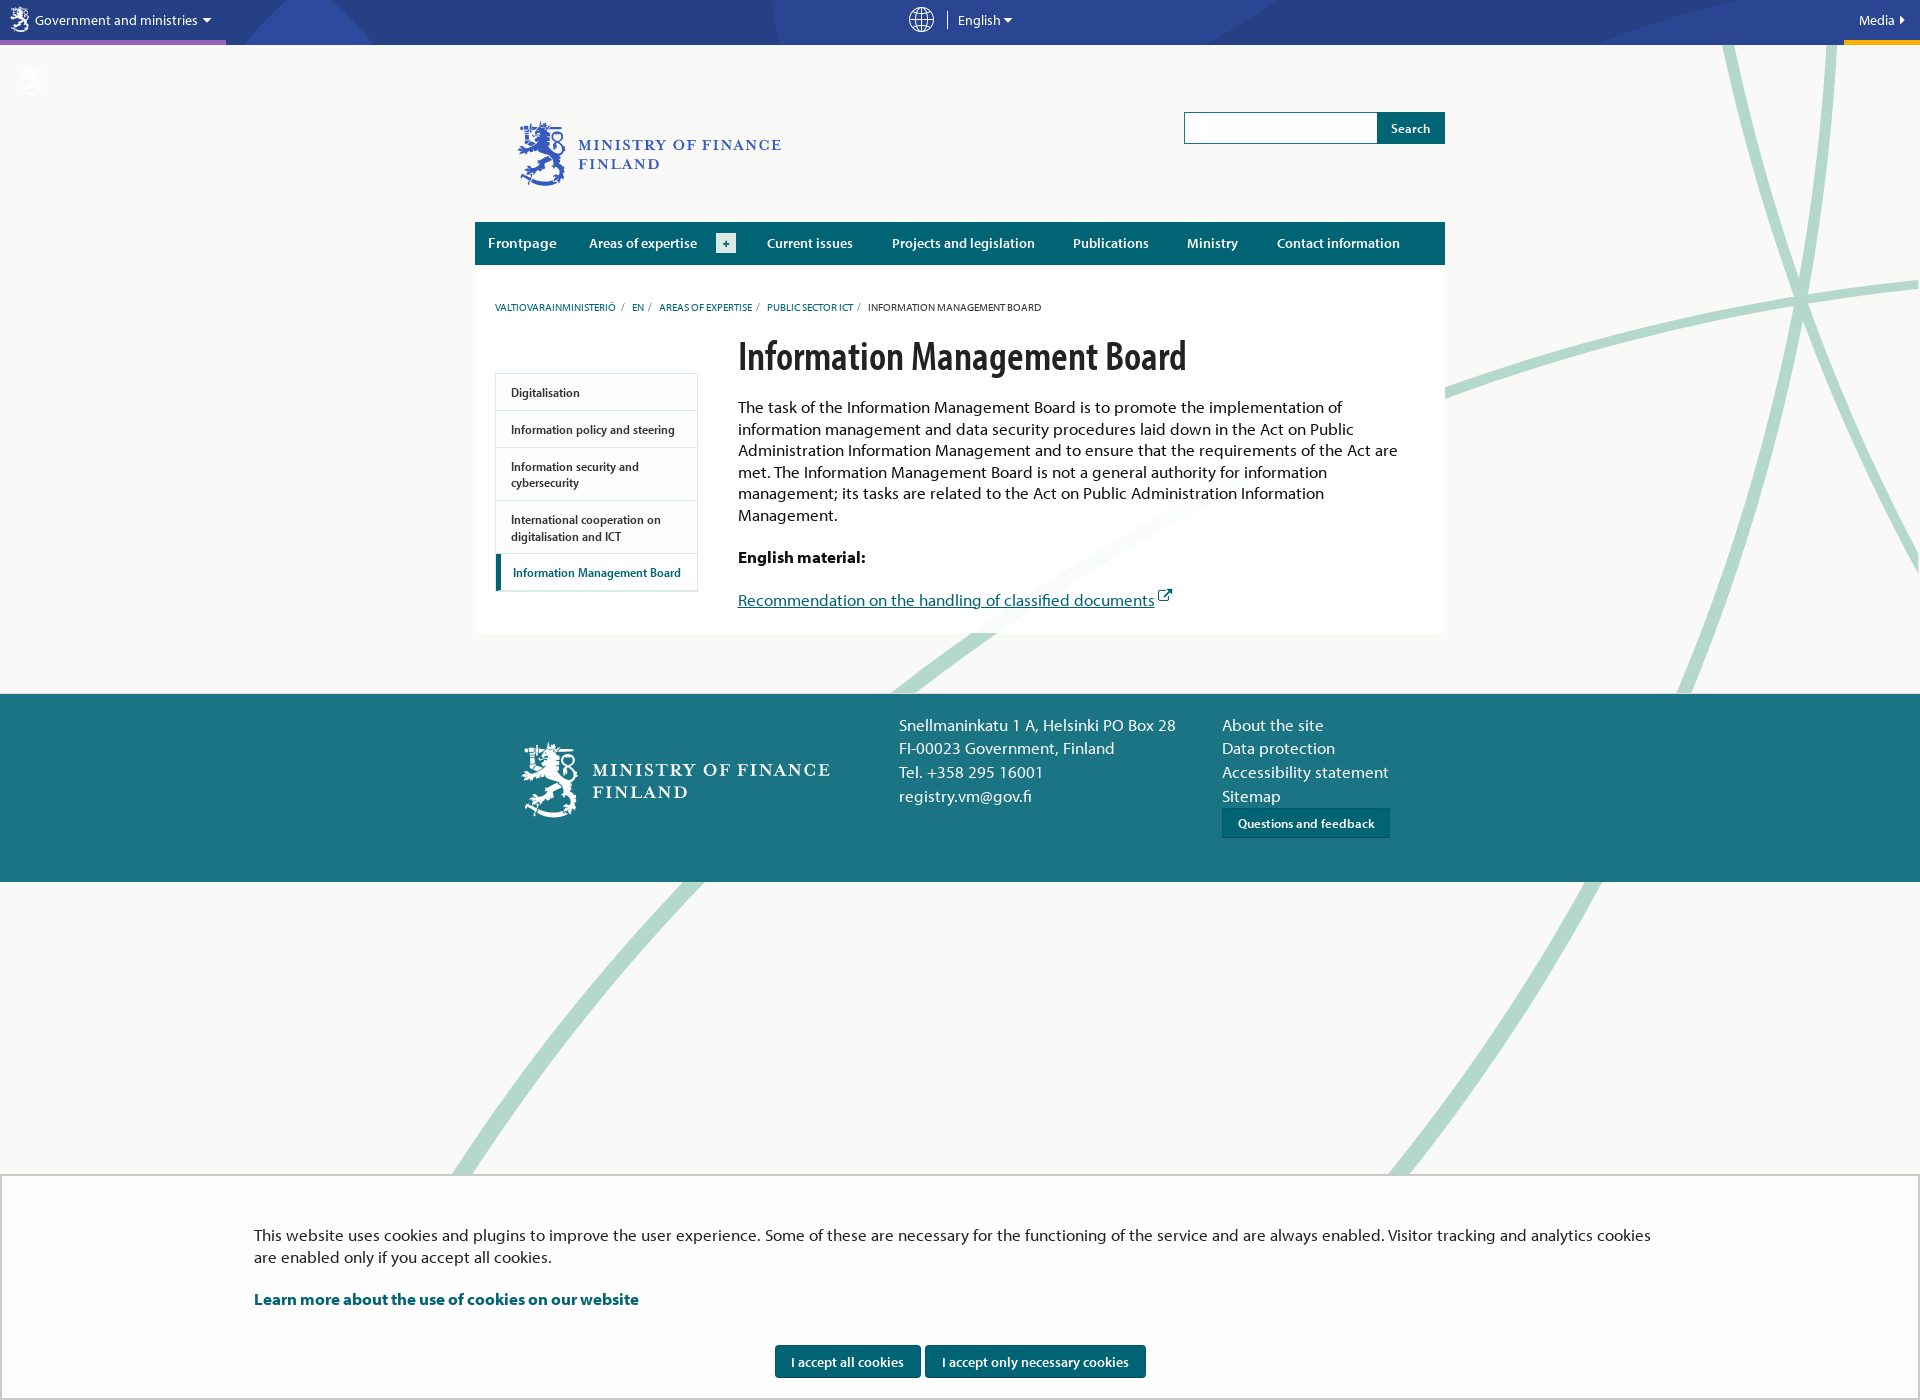 Näyttökuva informationmanagementboard.fi